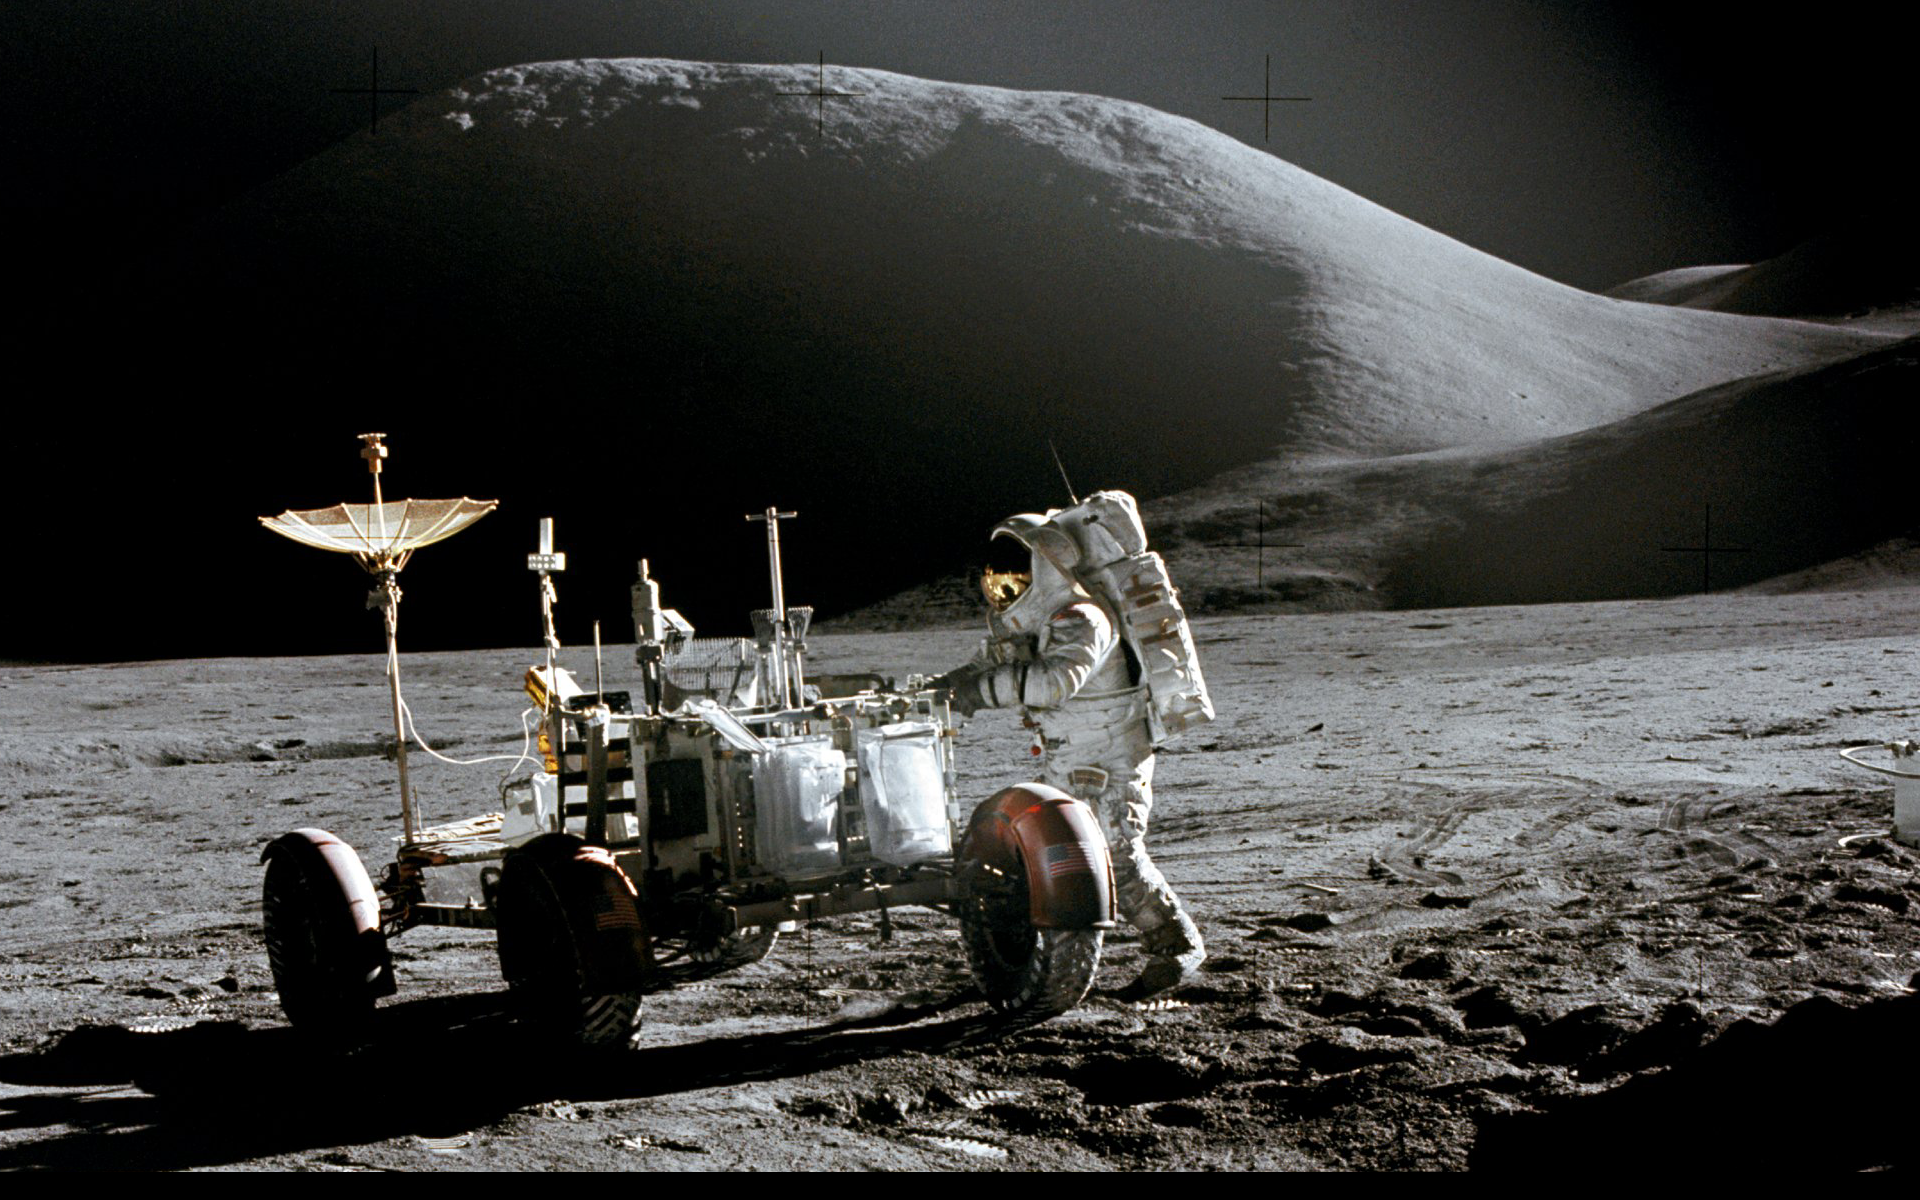 Шагающий по луне. Луномобиль Аполлон. Лунный Ровер Аполлон 11. Луноход Аполлон 15 кабина. Снимки с Луноход-1 с поверхности Луны.